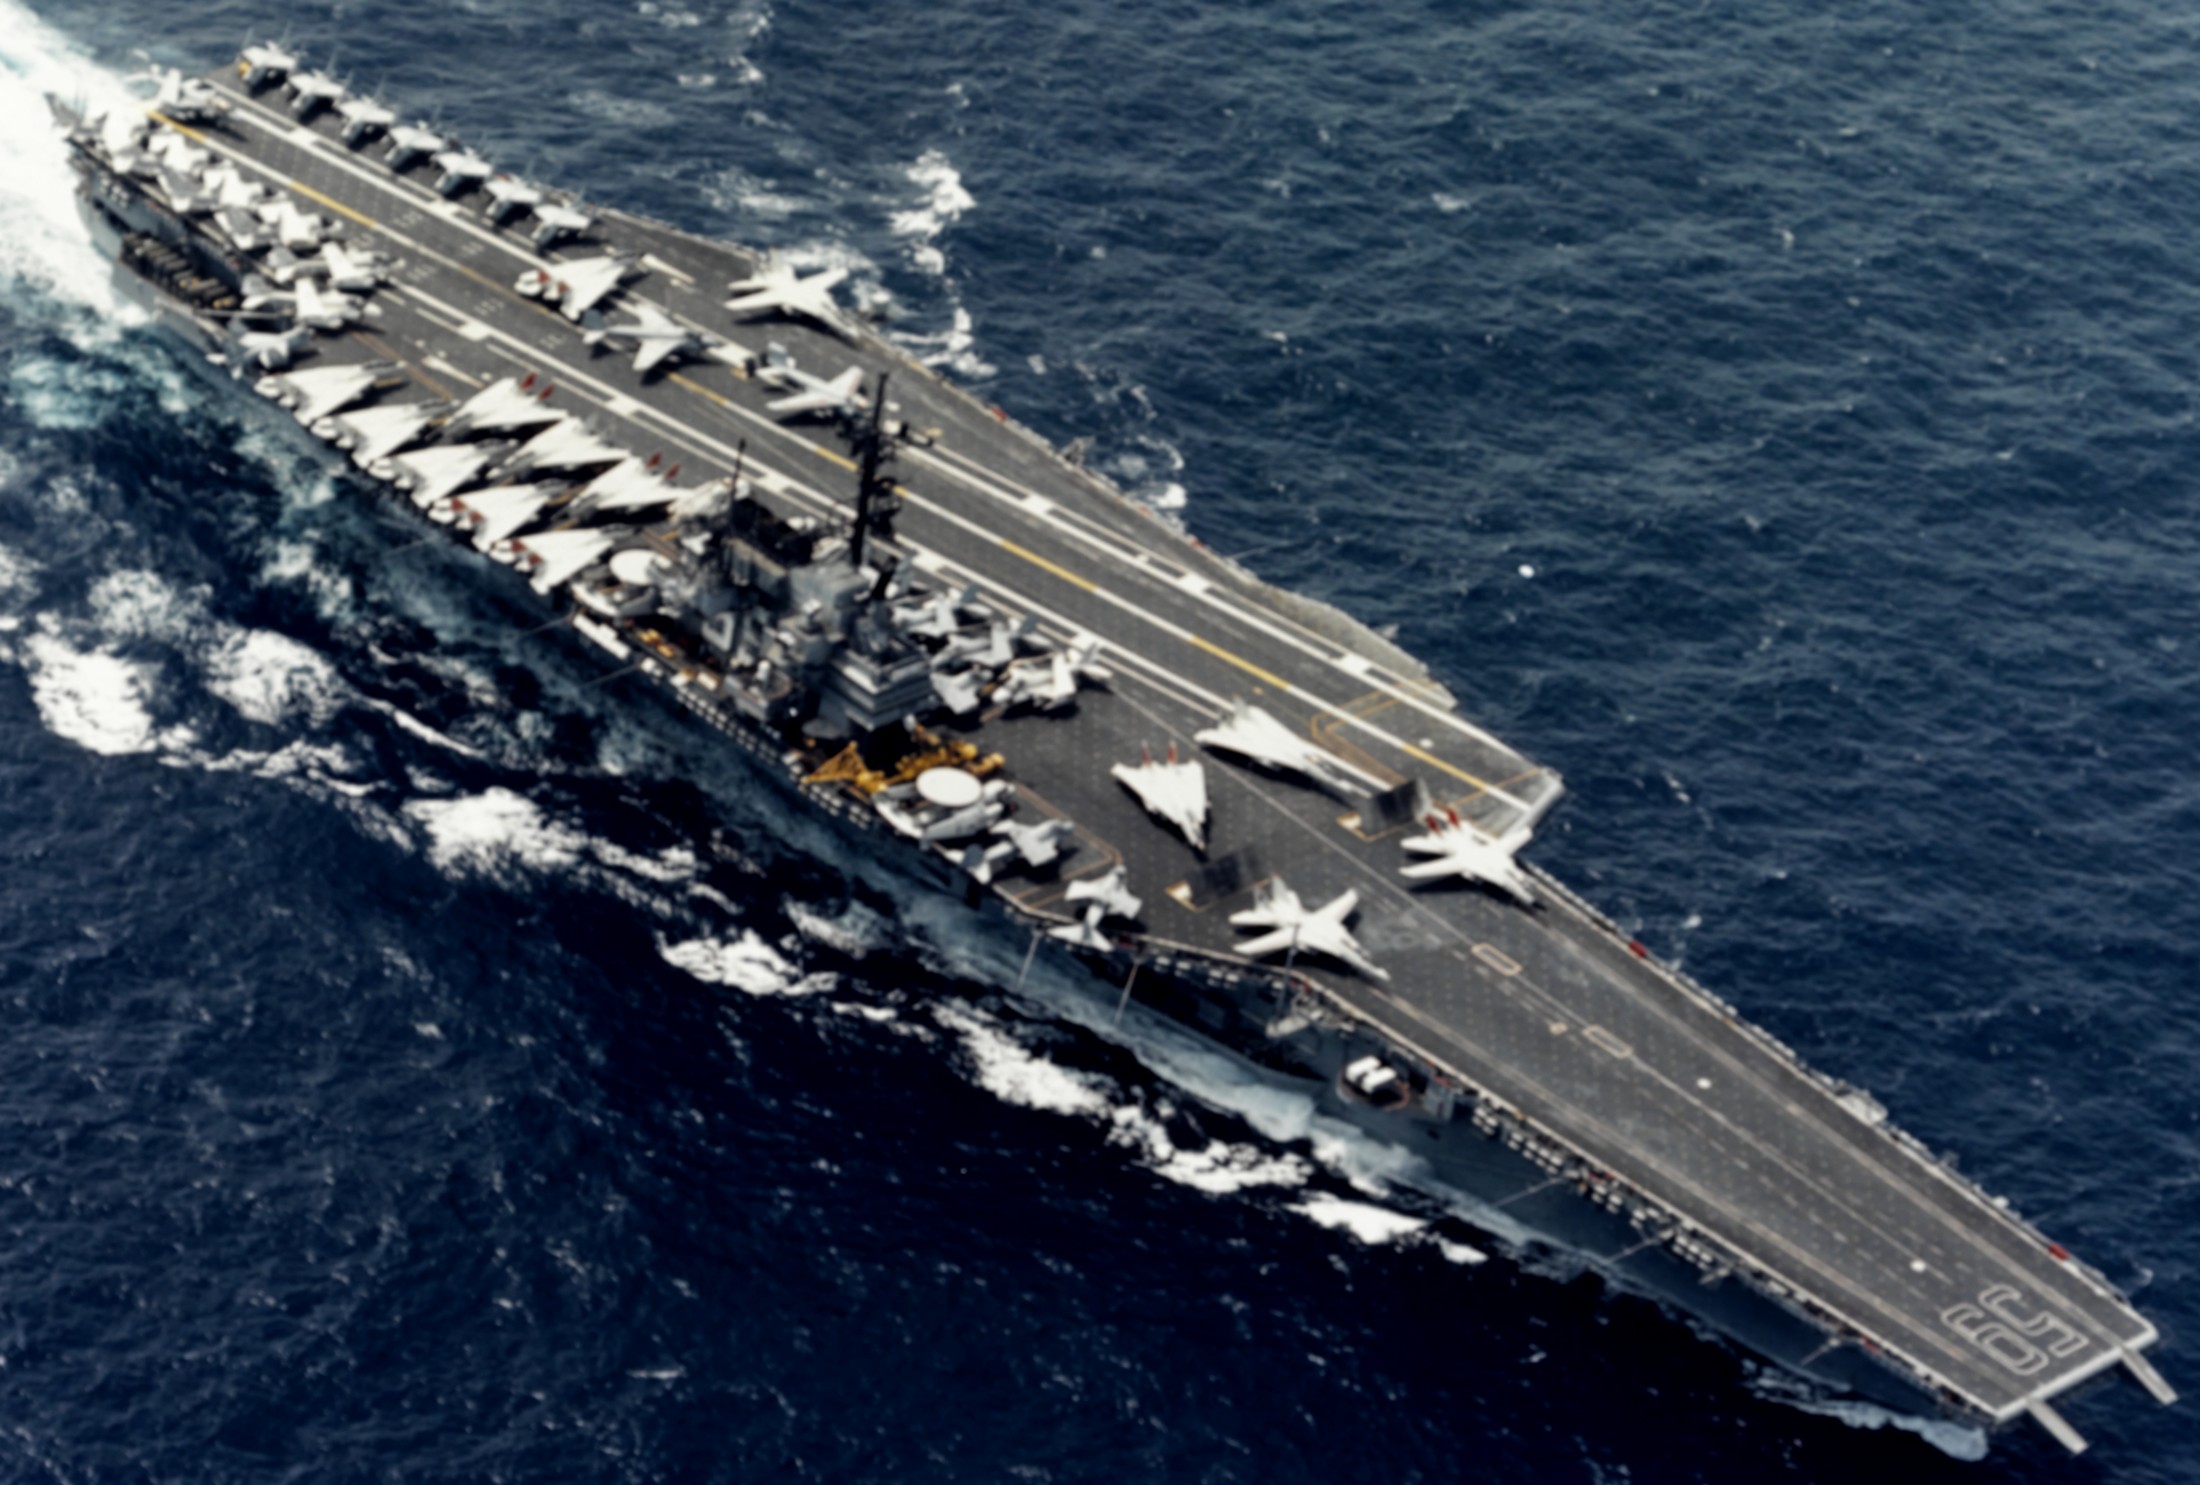 cv-59 uss forrestal aircraft carrier us navy newport news cvw 12x